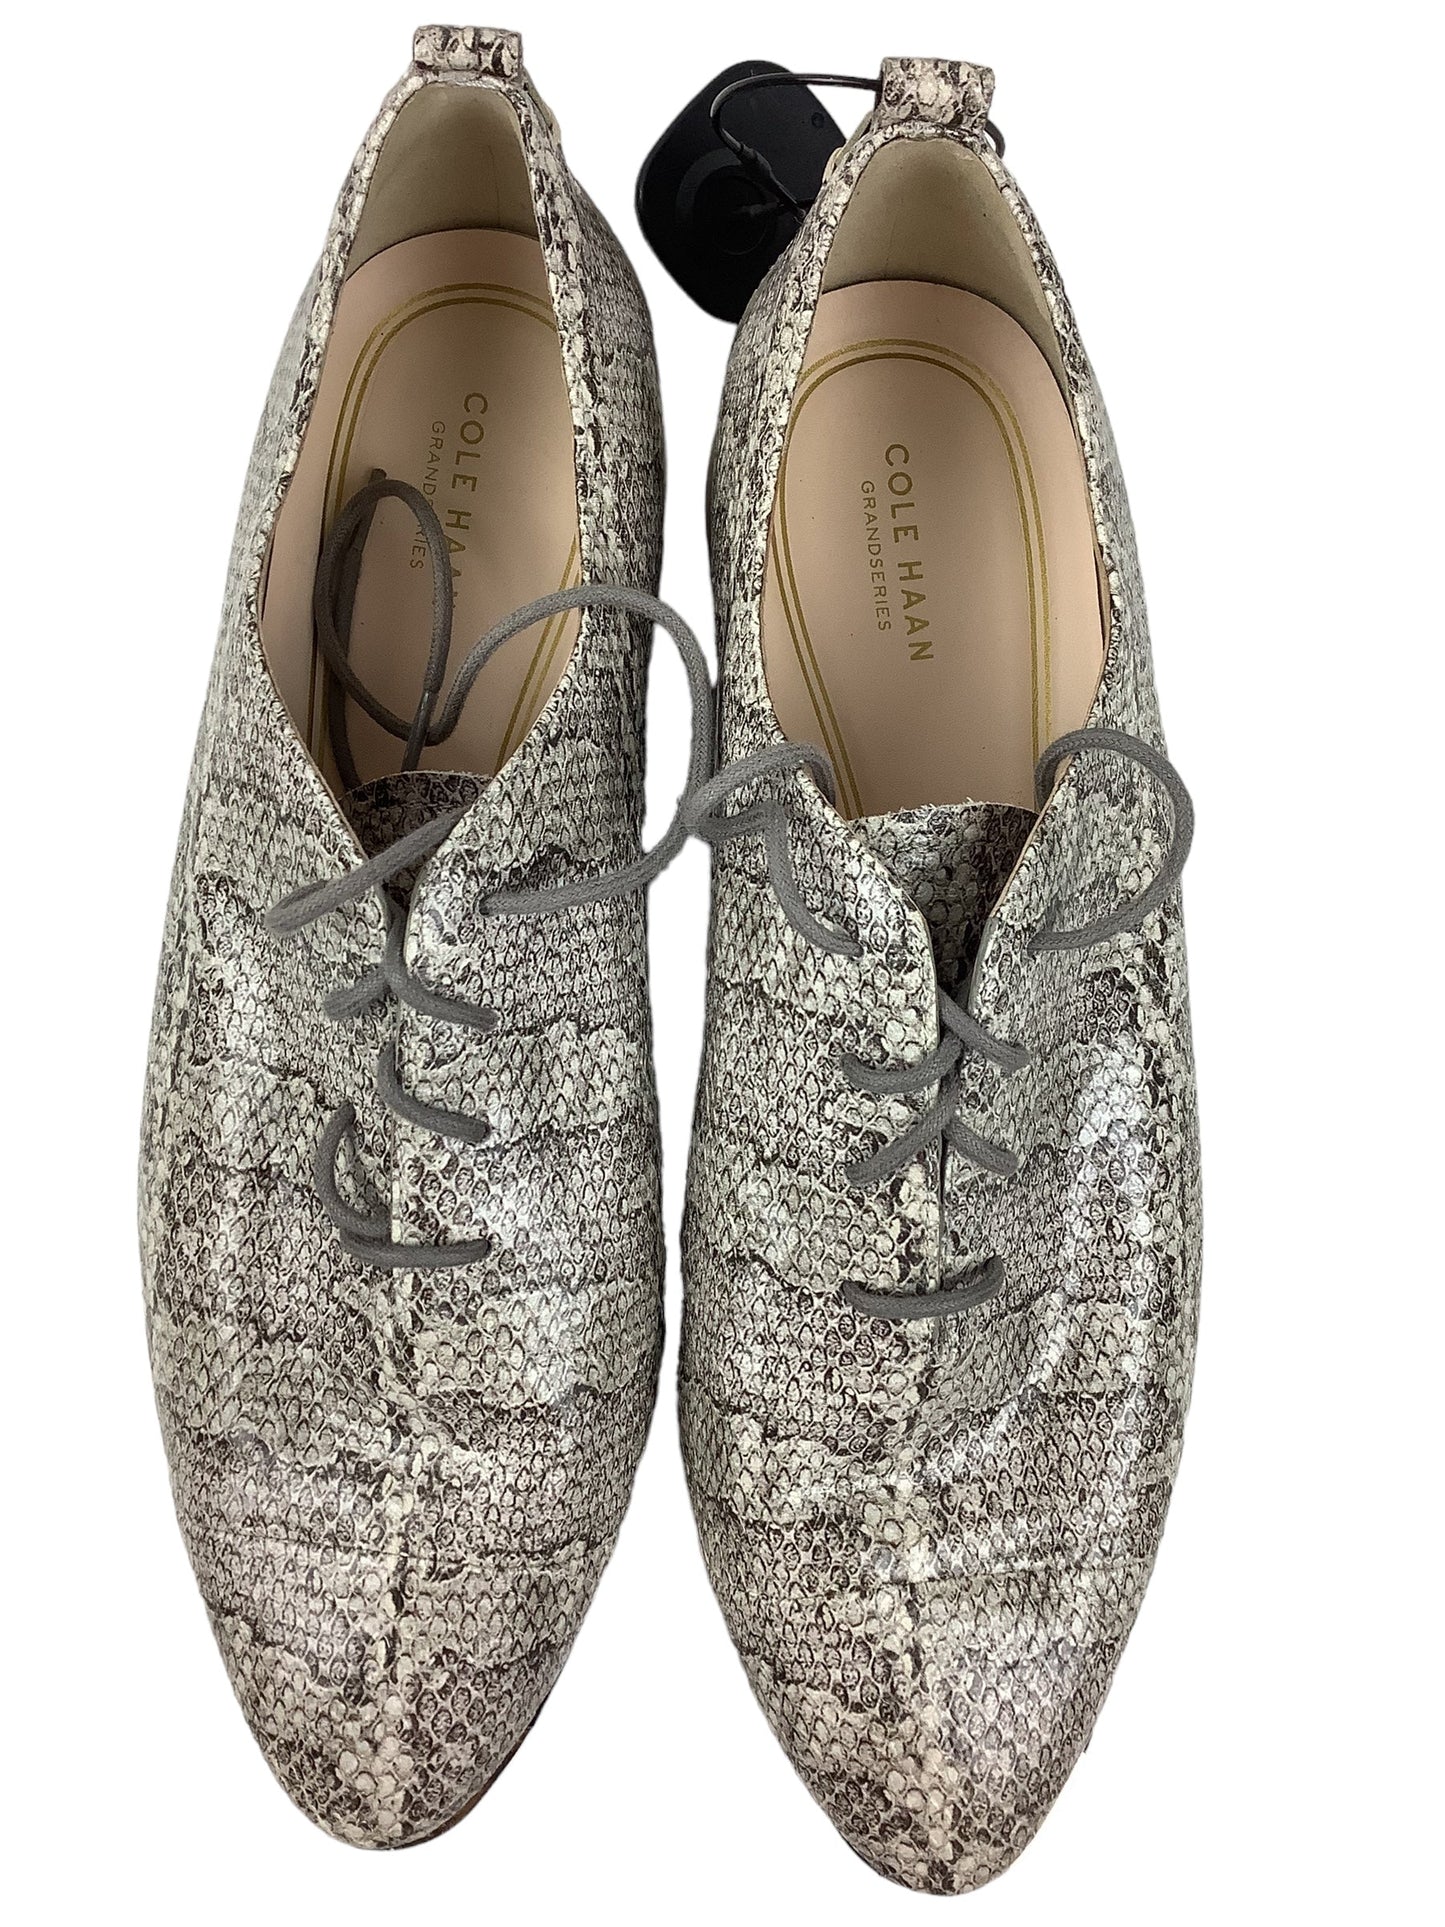 Snakeskin Print Shoes Designer Cole-haan, Size 11